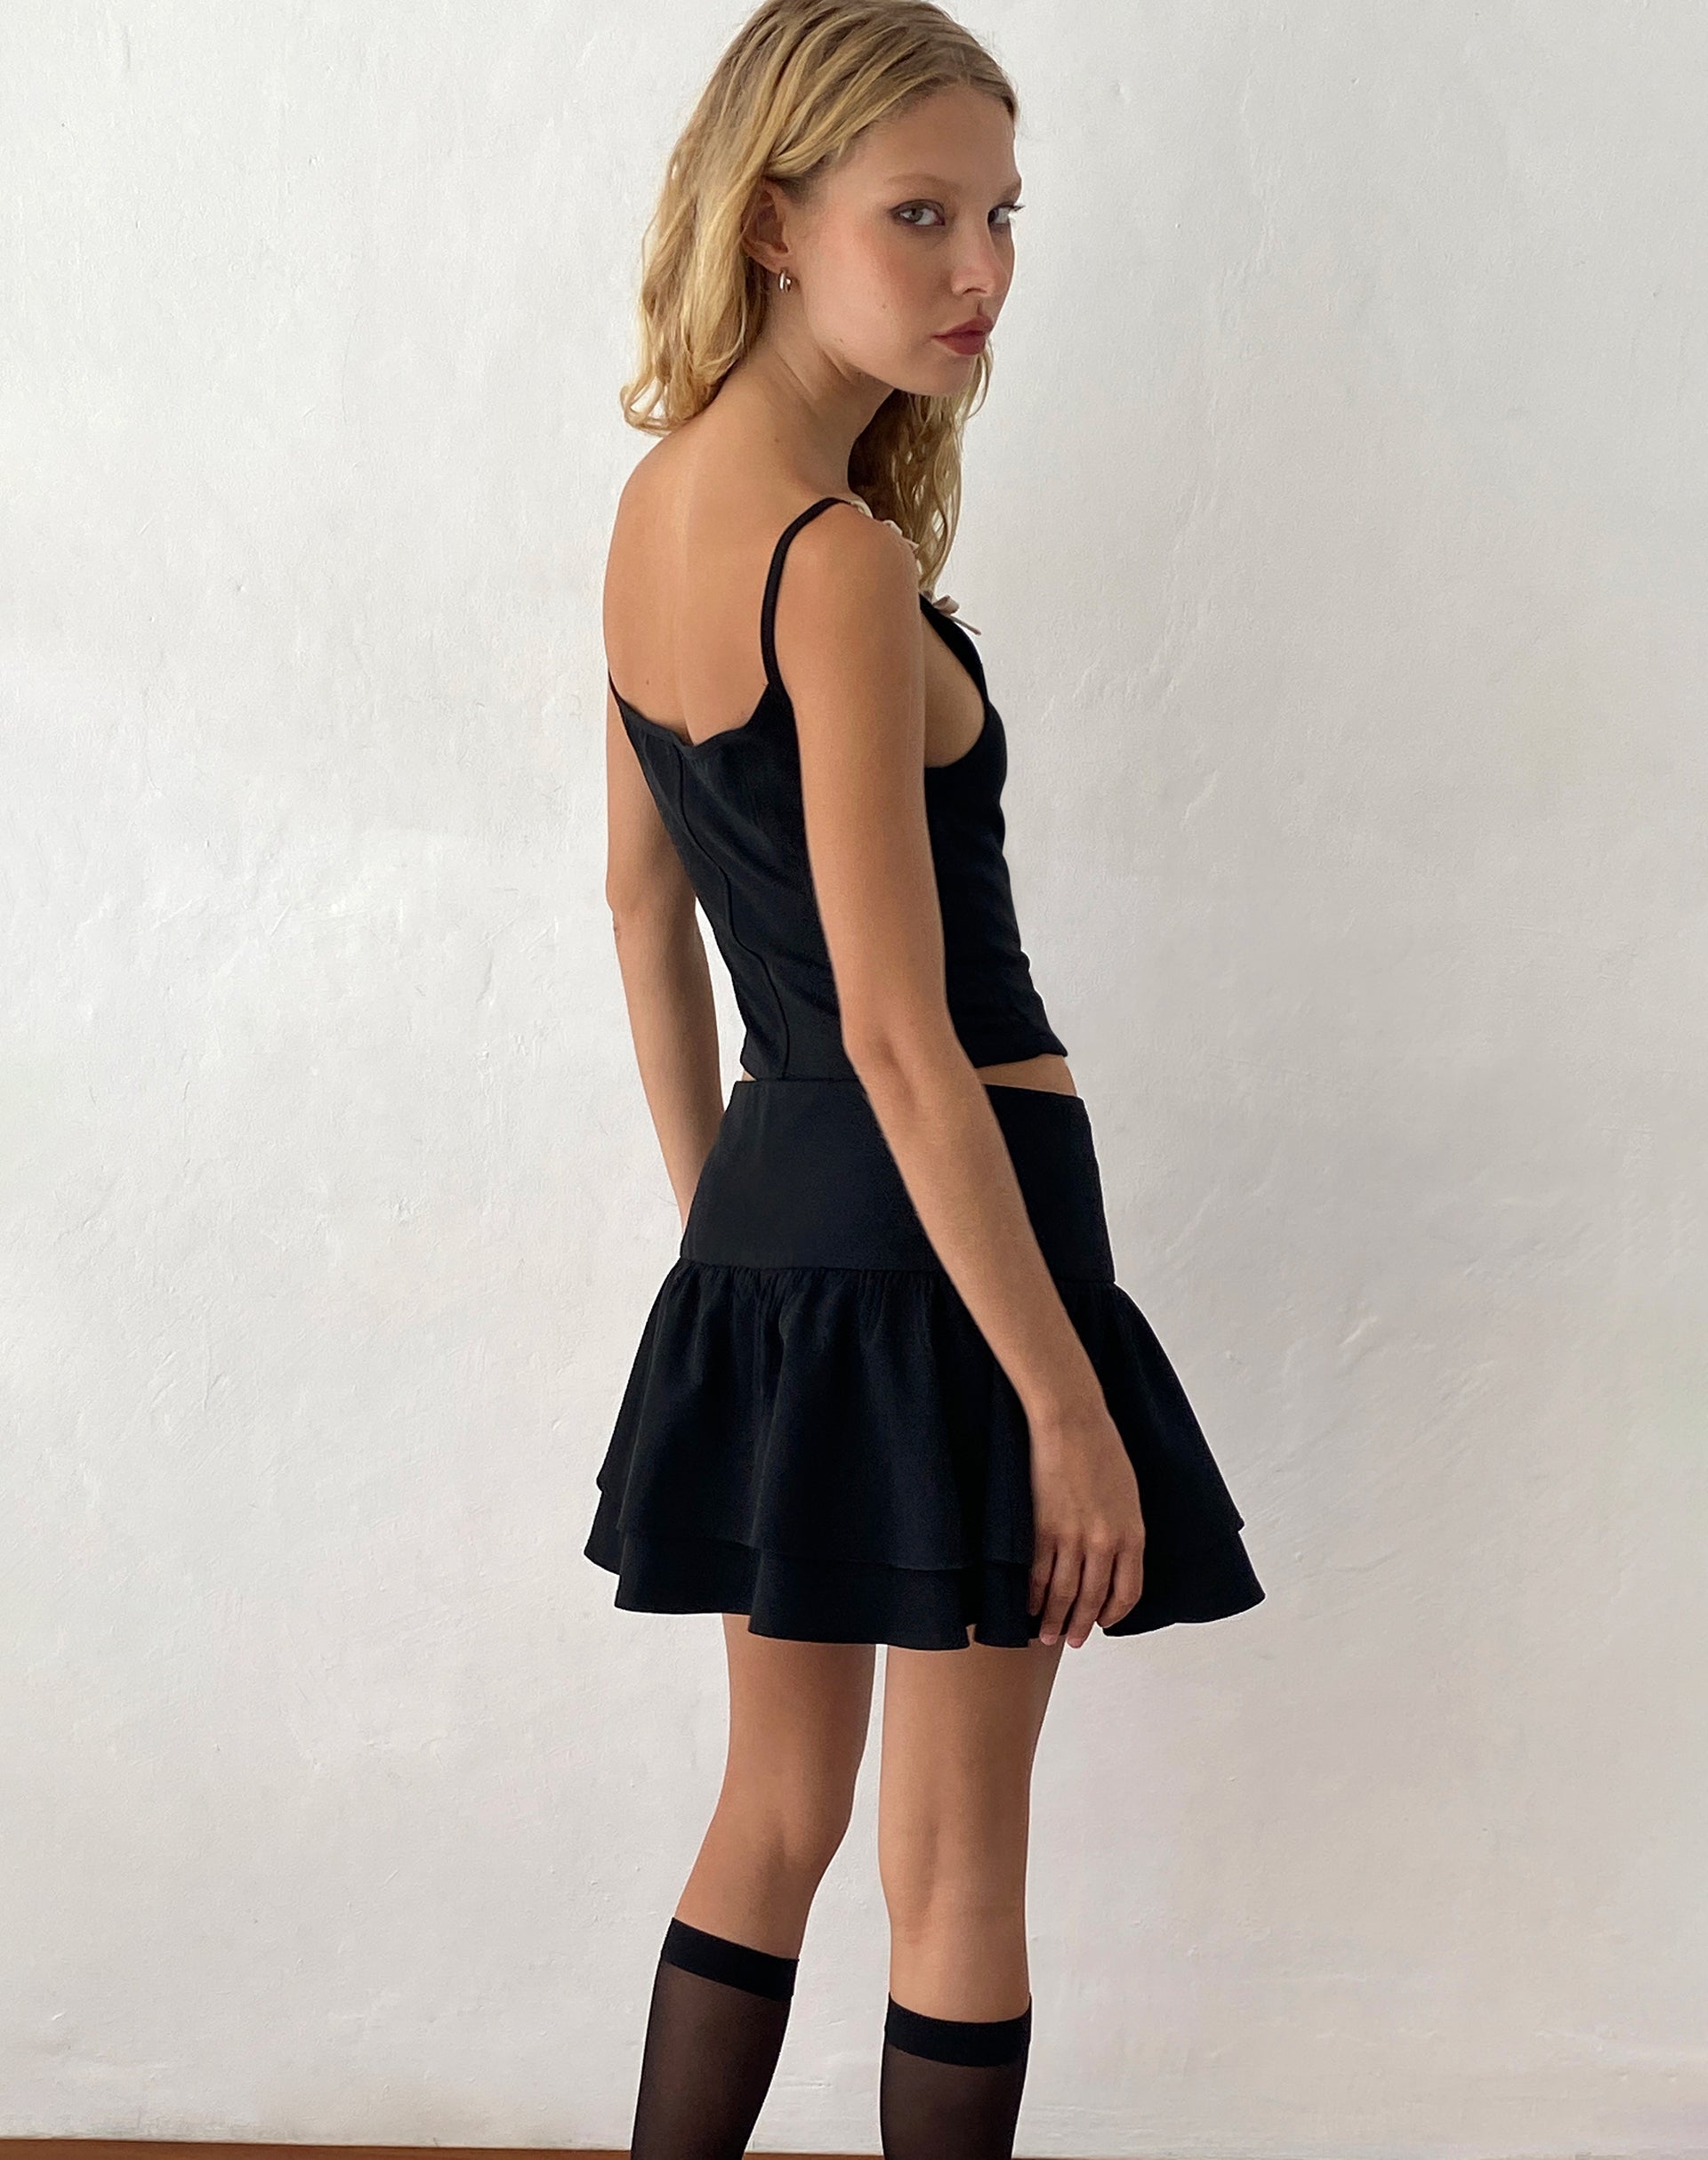 Image de la mini-jupe plissée et ajustée Samrina en noir